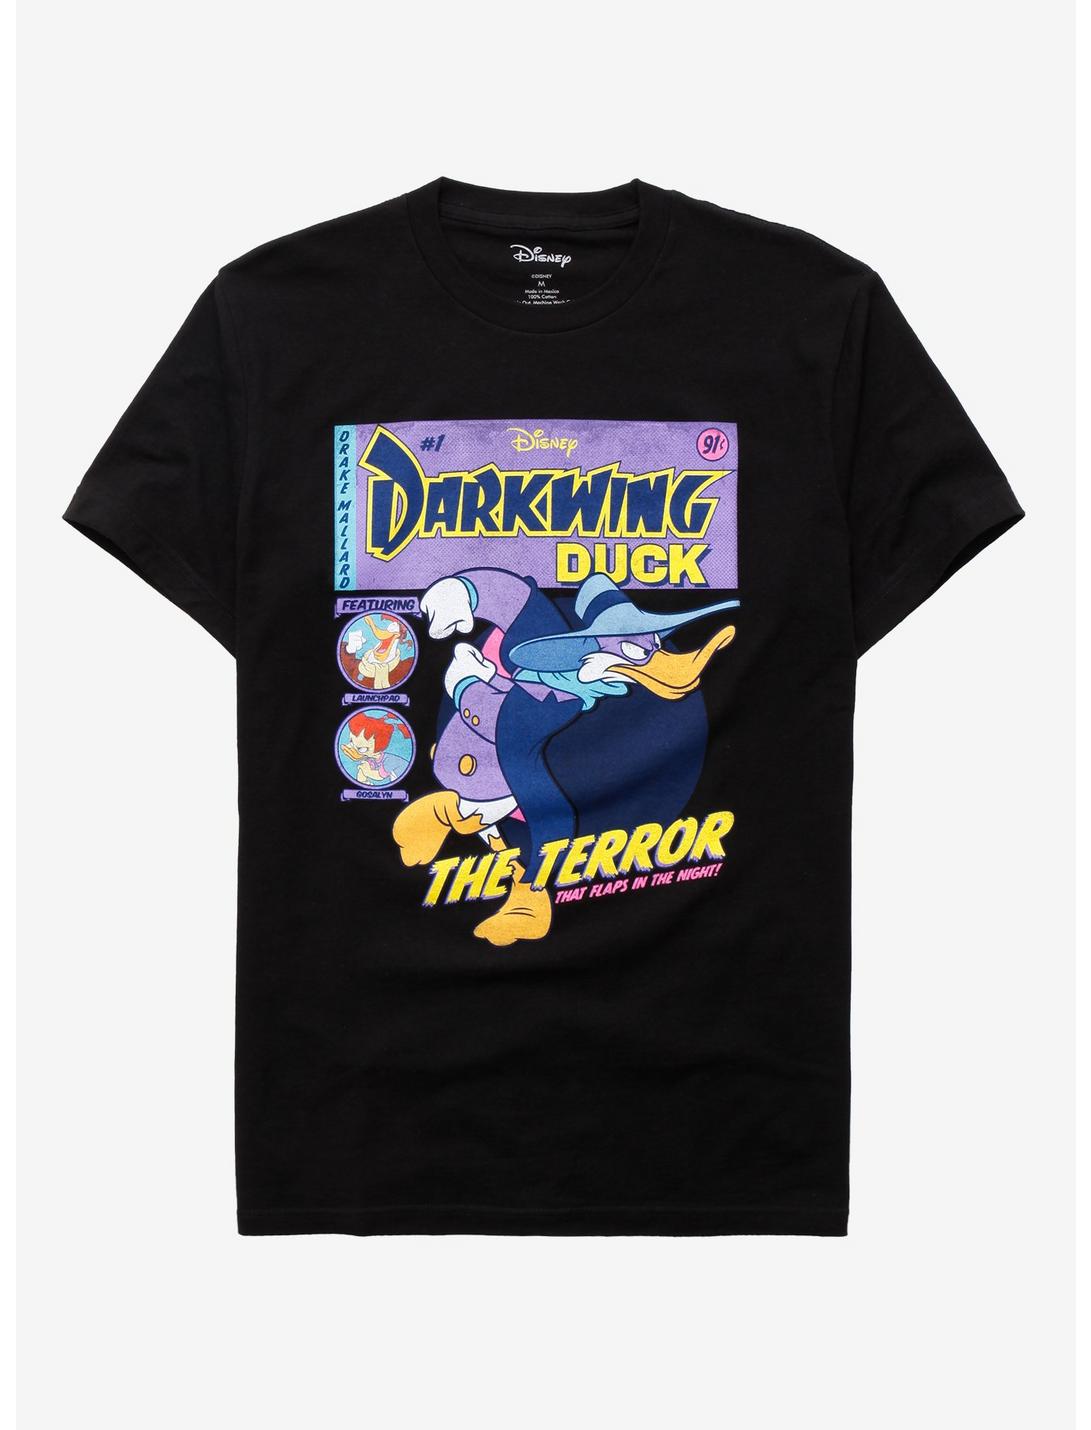 Disney Darkwing Duck Comic Book Cover Girls T-Shirt, MULTI, hi-res